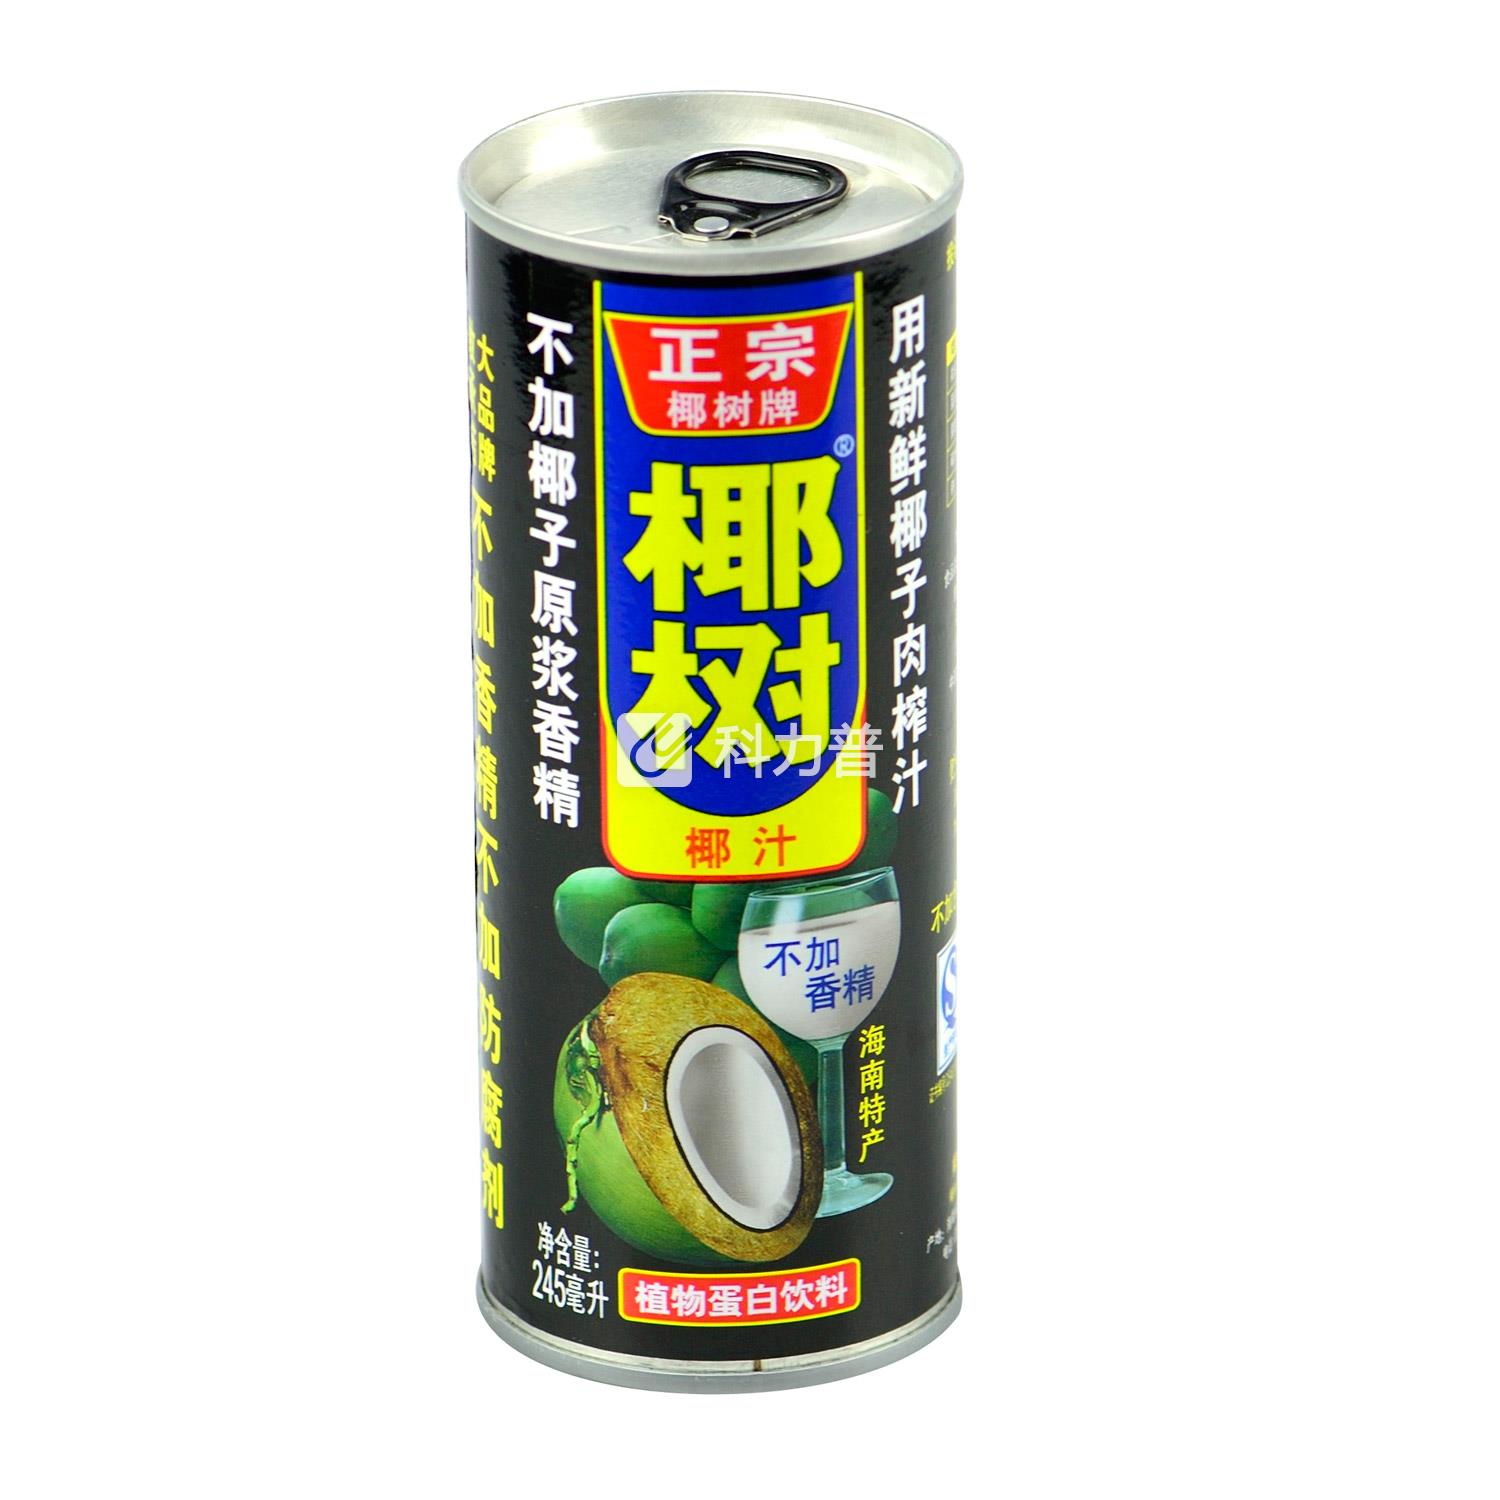 椰树 天然椰汁 245ml/罐 30罐/箱